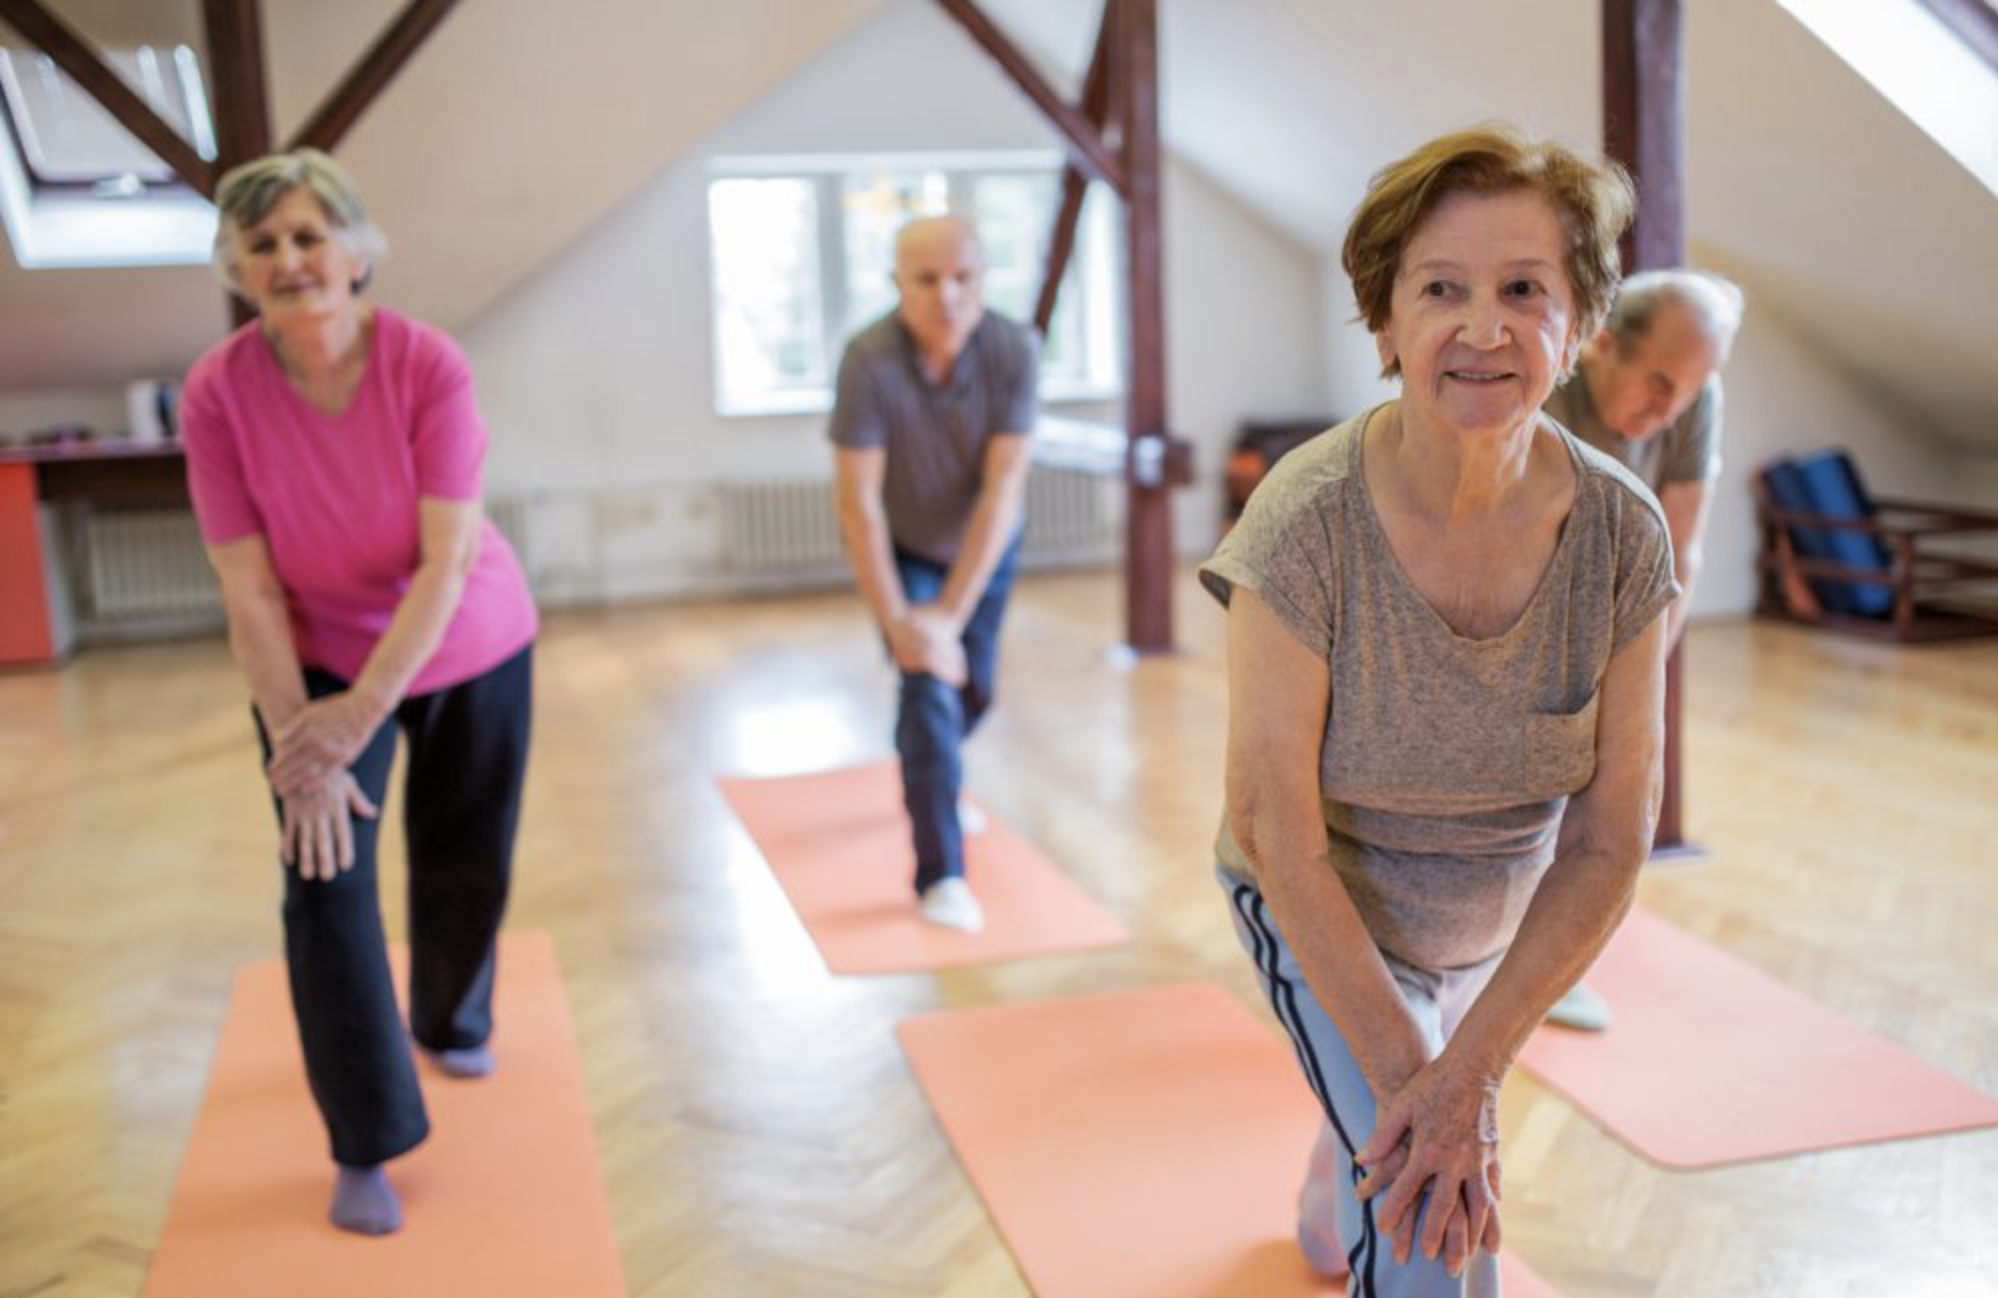 Attività fisica ed esercizio terapeutico portano benefici che vanno oltre sintomi e impairment nelle persone con artrosi d’anca e di ginocchio